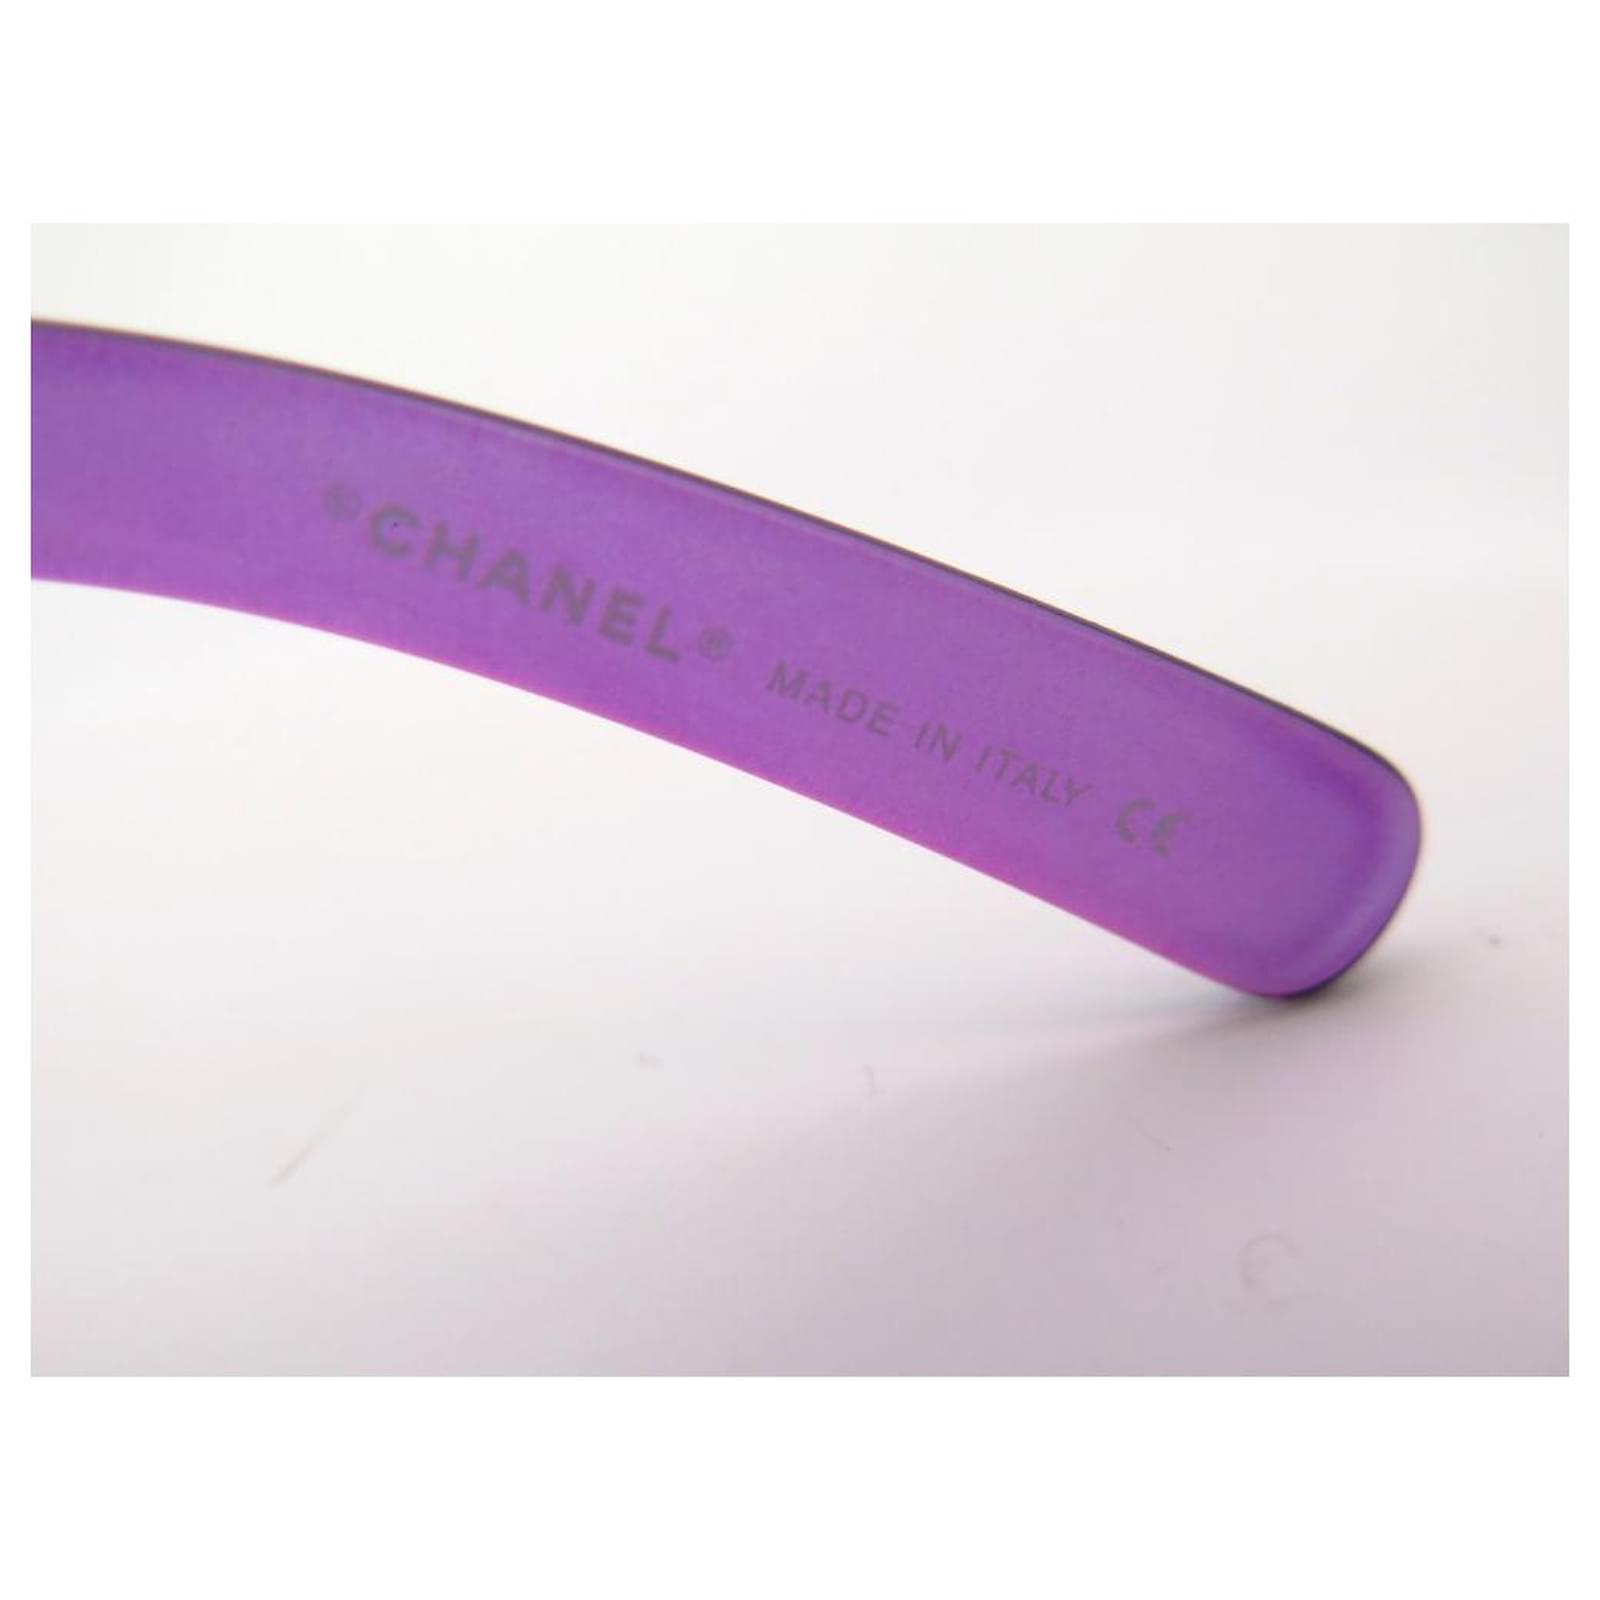 Chanel sunglasses 5072 IN PURPLE PLASTIC PURPLE SUNGLASSES BOX ref